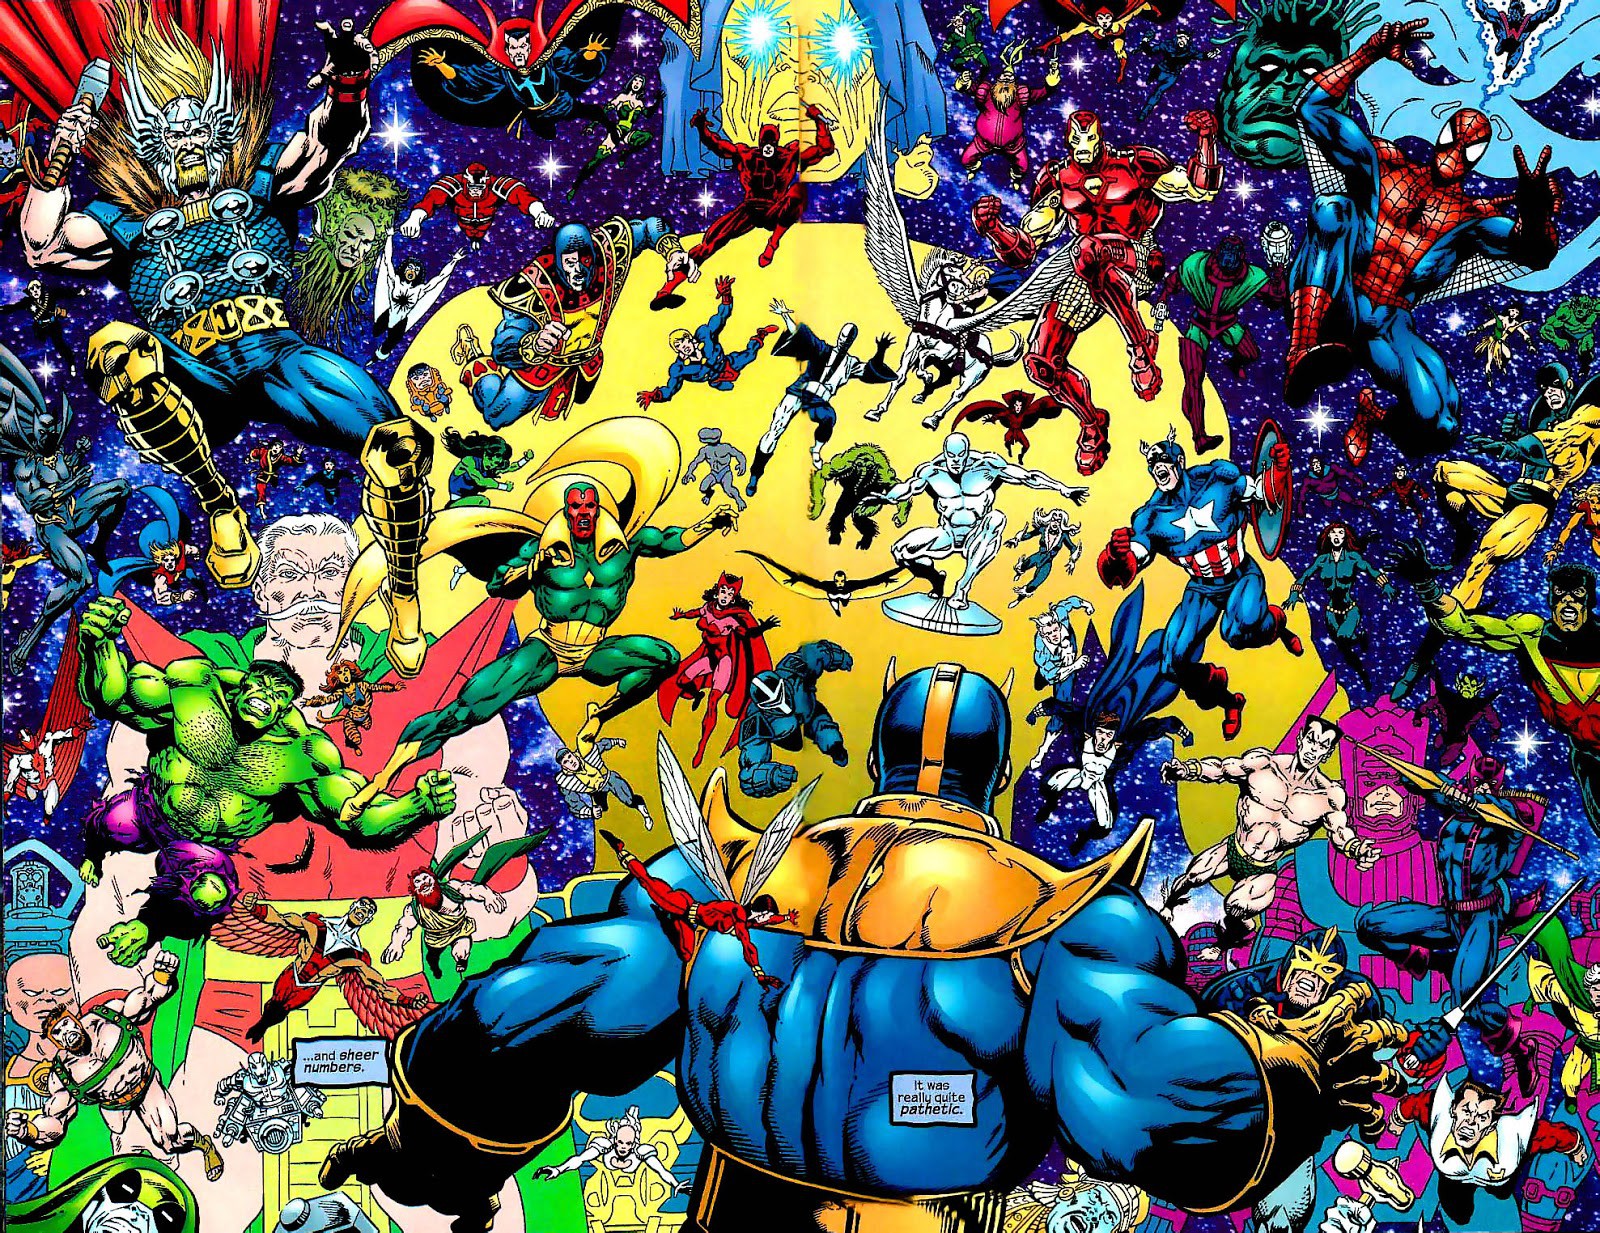 Heart of the Universe, bảo vật vũ trụ giúp Thanos trở thành Chúa Trời, sở hữu quyền năng vượt xa Găng Tay Vô Cực - Ảnh 12.